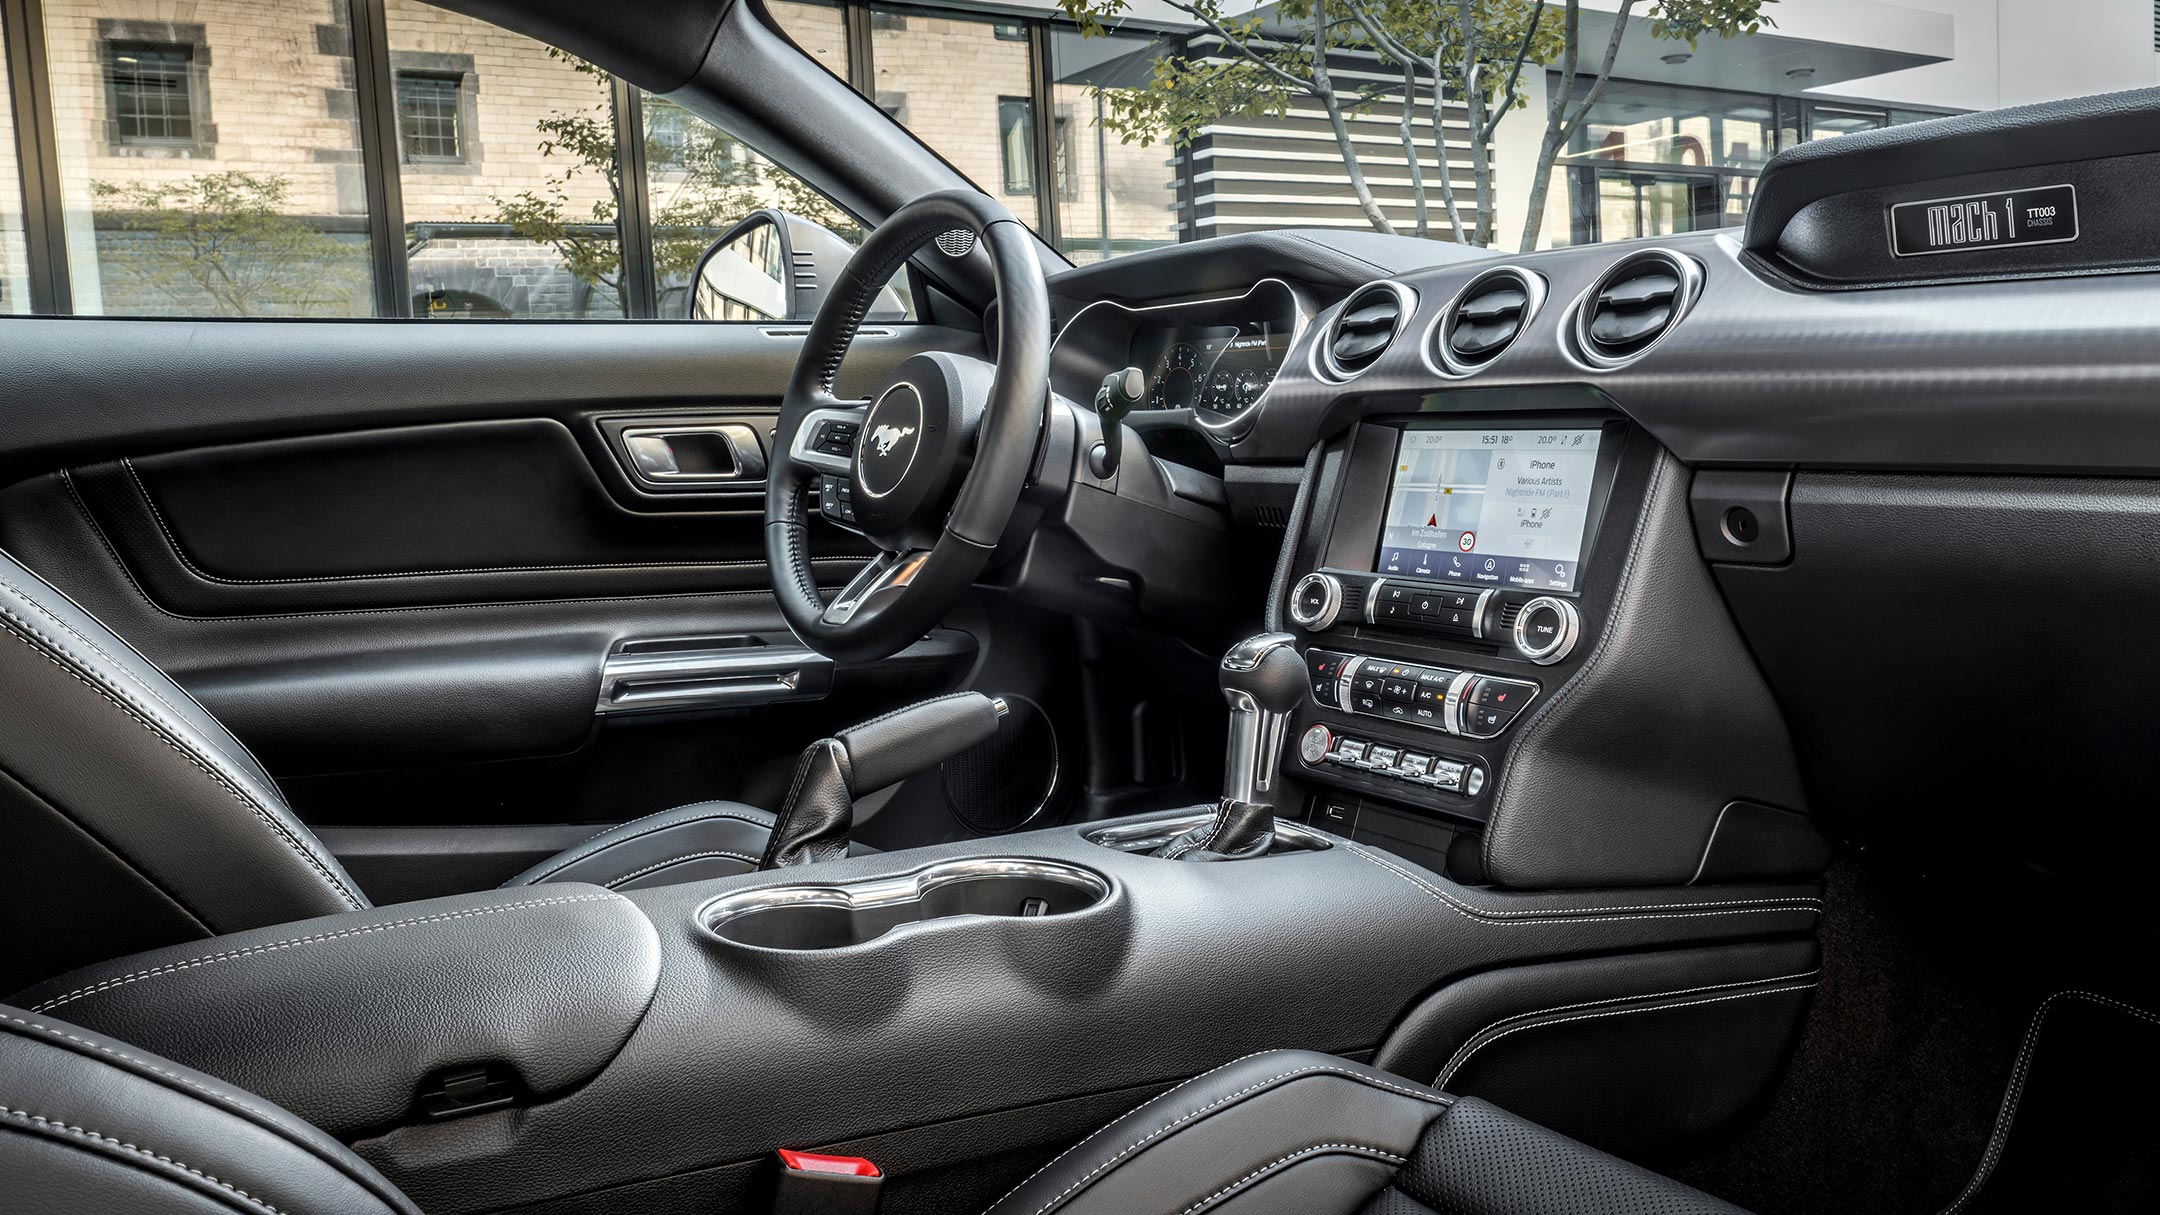 Ford Mustang GT. Vue intérieure du cockpit avec les sièges avant